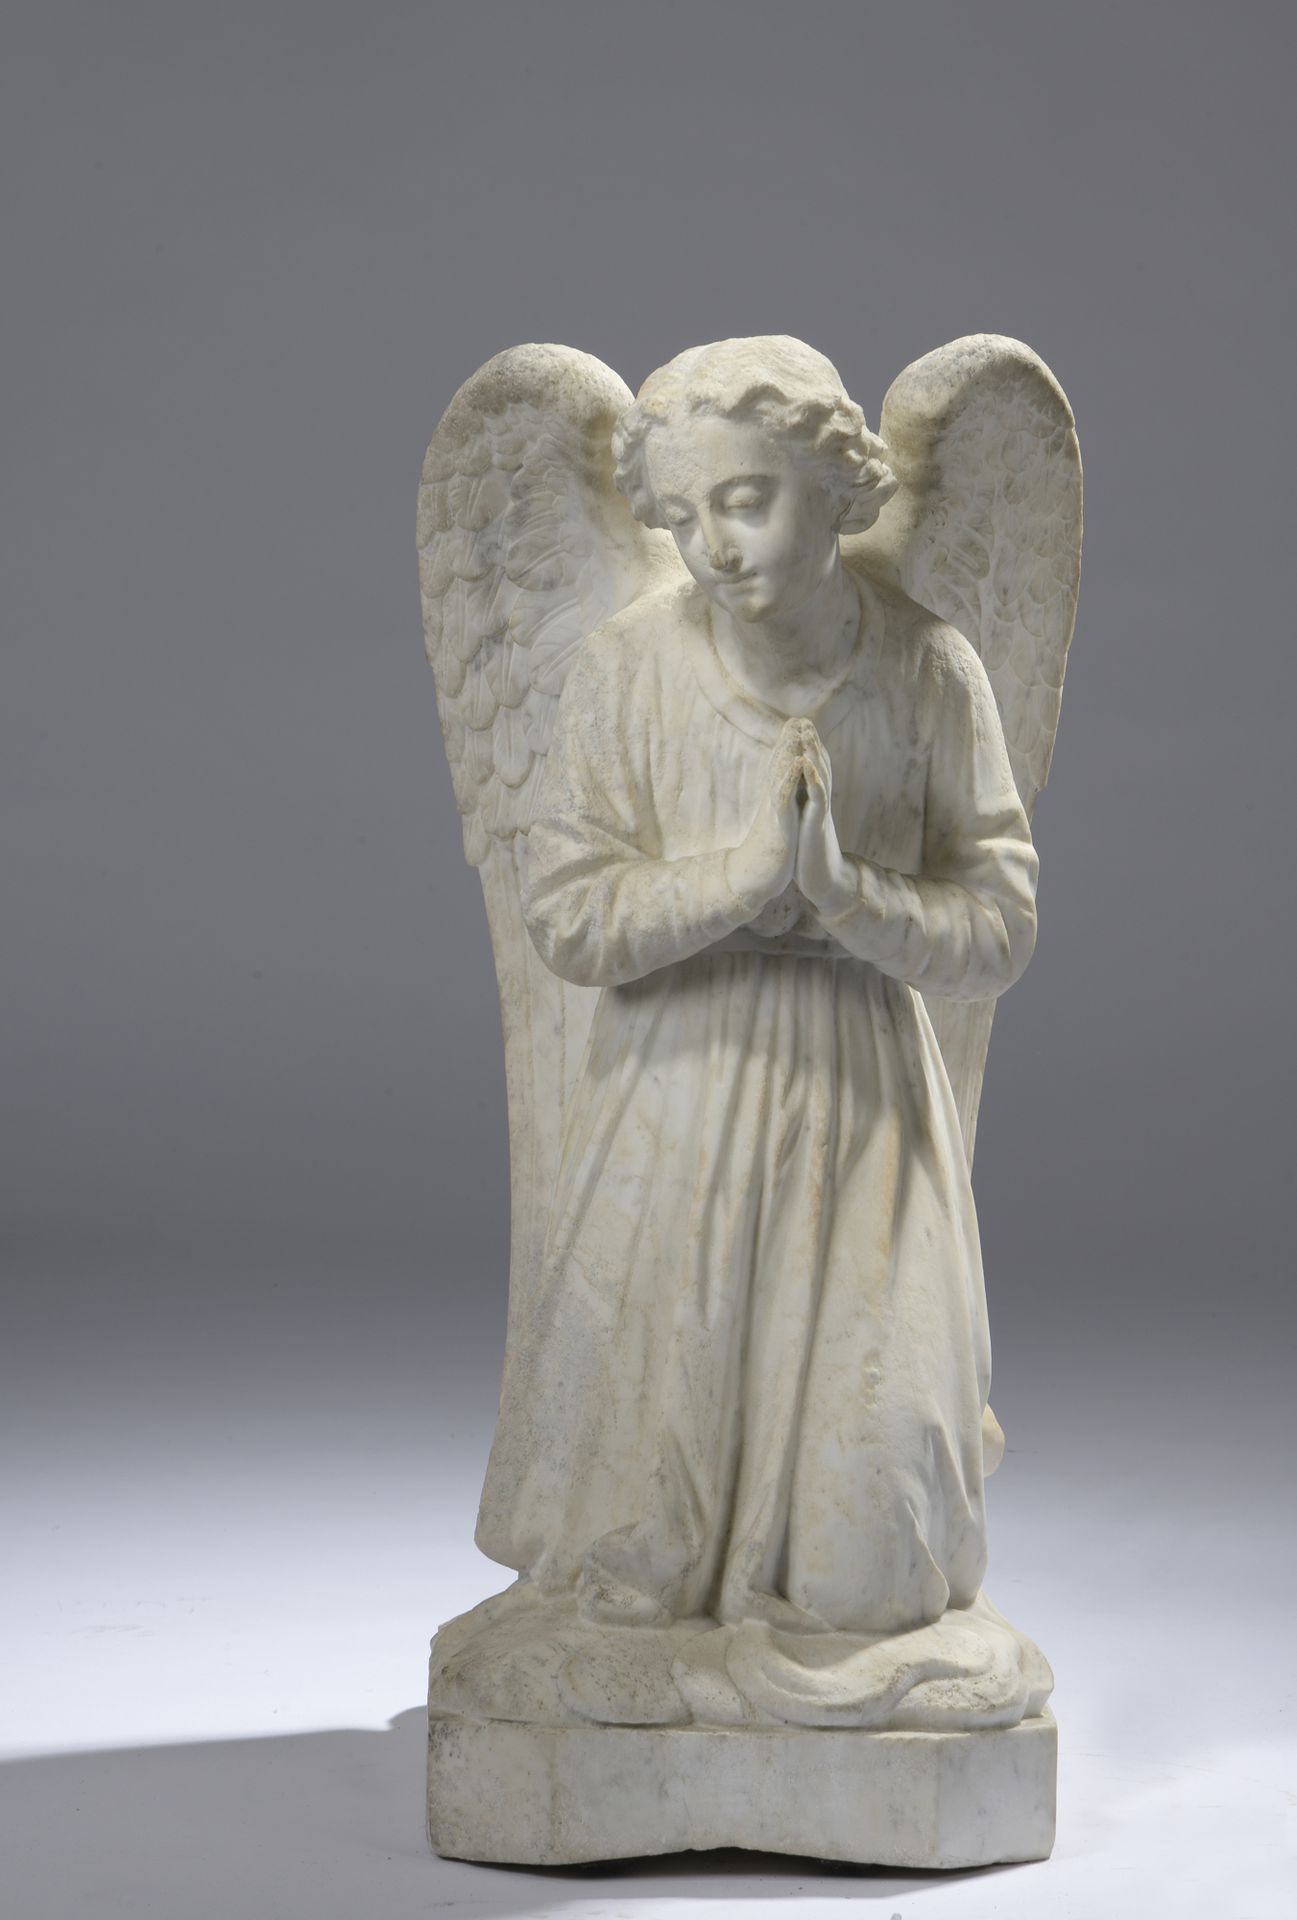 Null 19 世纪末的法国作品 
祈祷中的天使
大理石雕塑。
略有侵蚀。
H.64 厘米